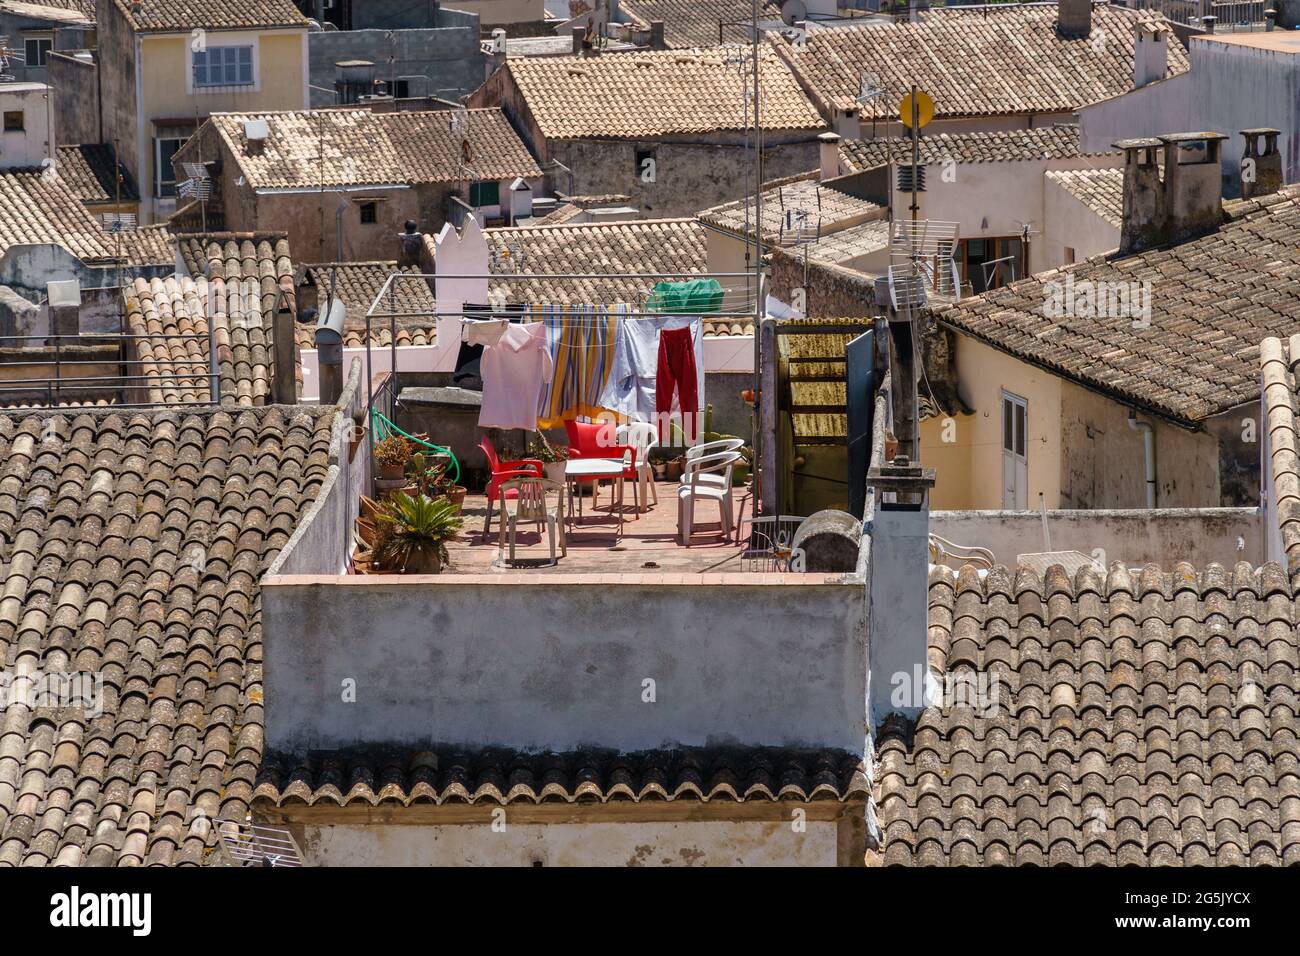 Trocknen von Kleidung auf einer Wäscheleine im Freien. Häuser mit traditionellen Dachziegeln in der schönen Altstadt von Arta, Mallorca, Spanien. Mediterrane Kultur. Stockfoto